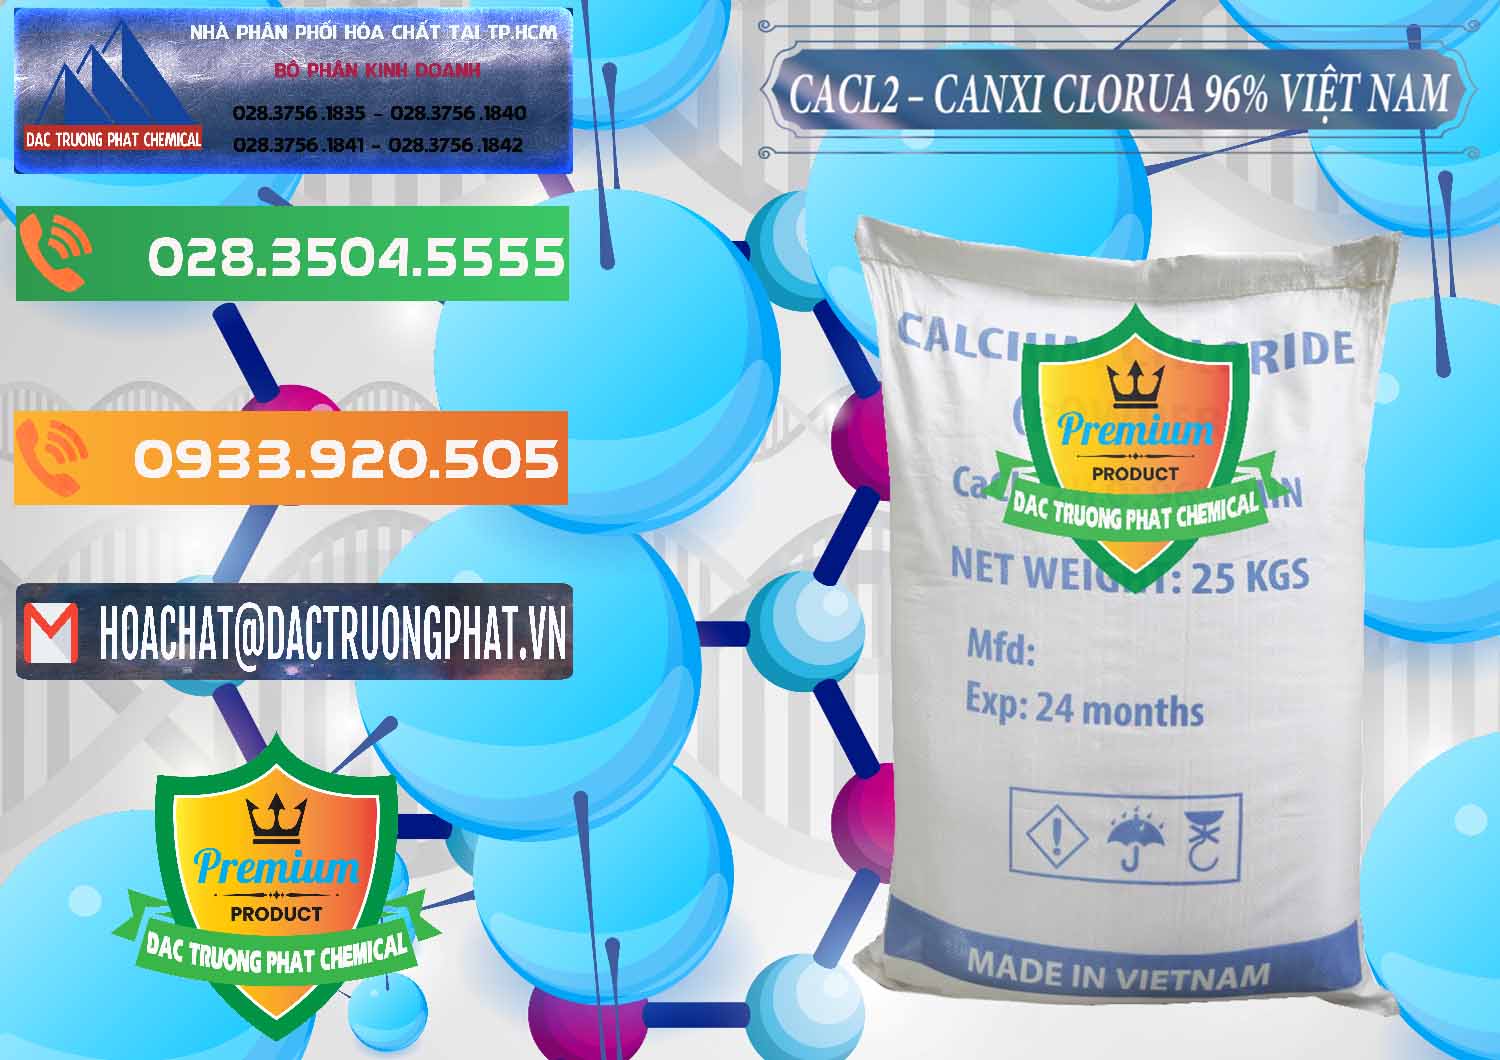 Bán và cung ứng CaCl2 – Canxi Clorua 96% Việt Nam - 0236 - Đơn vị kinh doanh & bán hóa chất tại TP.HCM - hoachatxulynuoc.com.vn